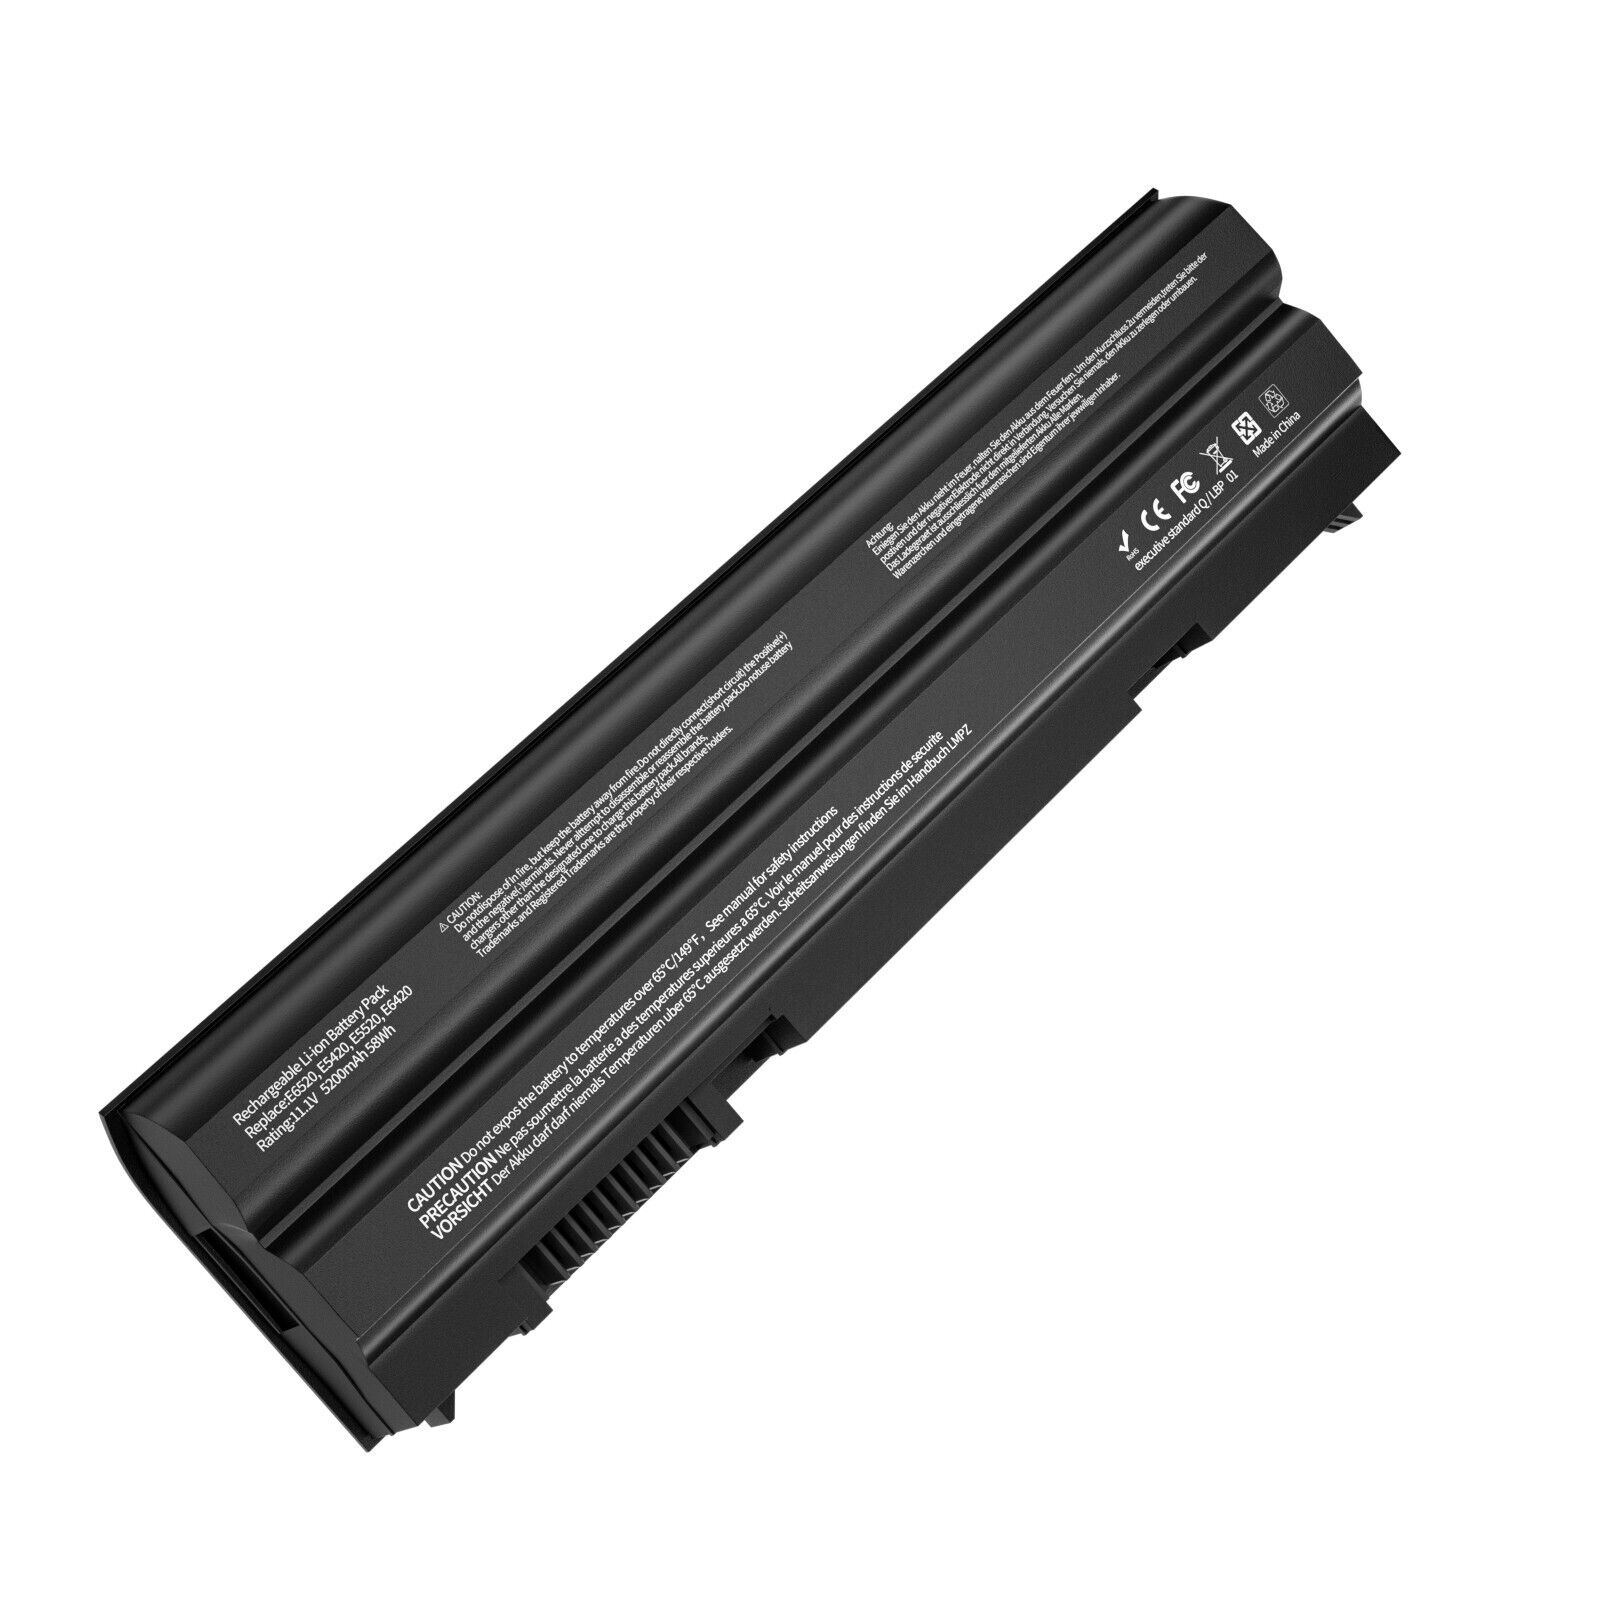 E6420 Battery for Dell Latitude E6440 E5430 E5520 E5530 E6430 E6540 E6520 T54FJ